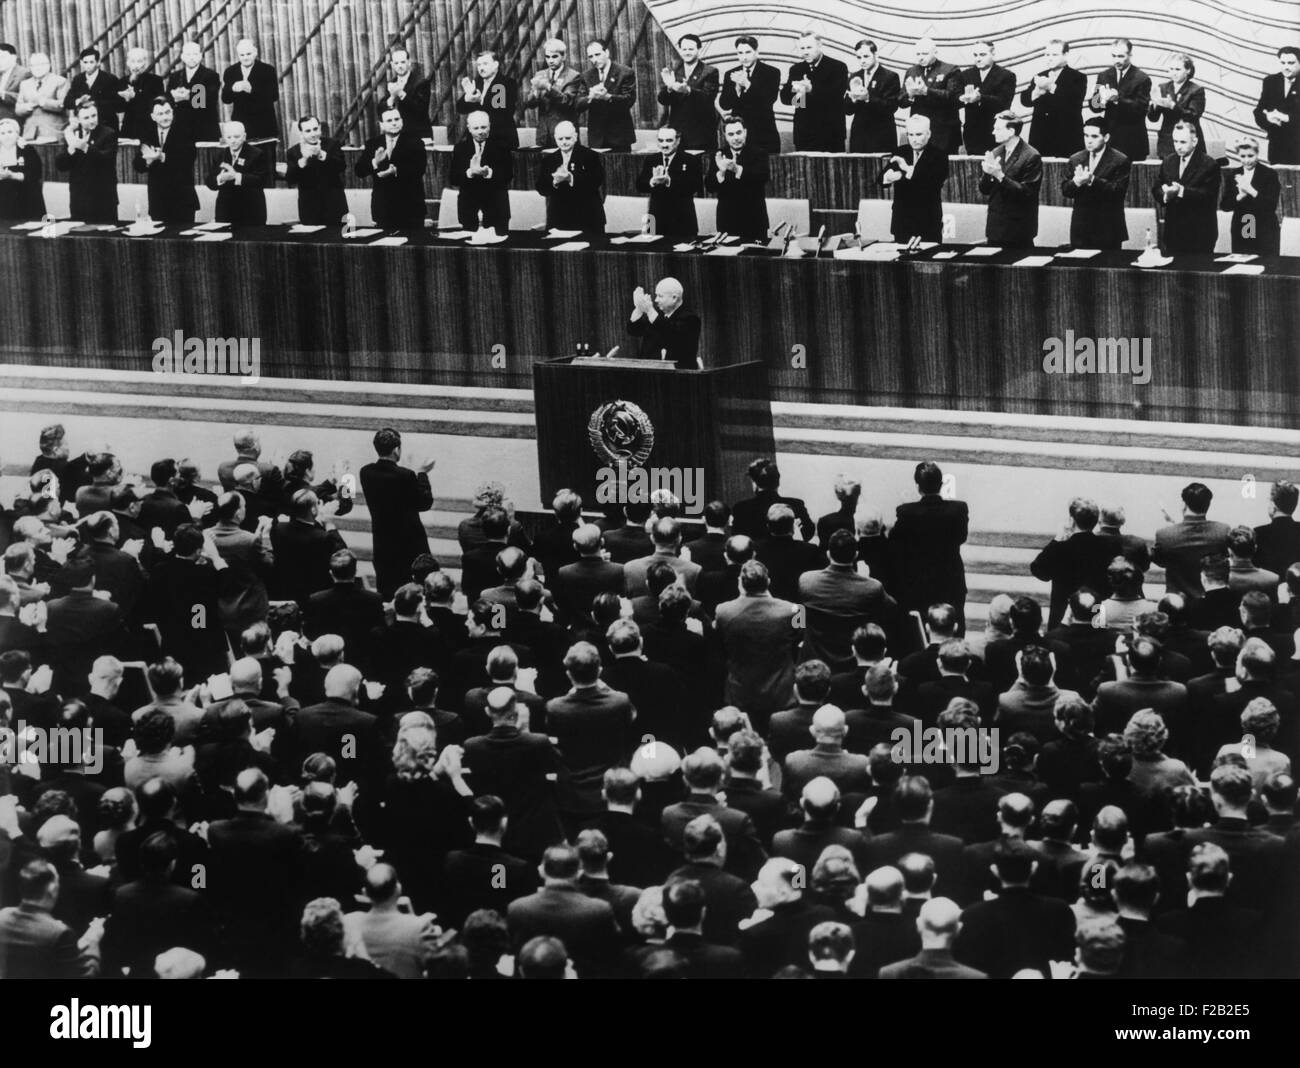 Xxii congresso del Partito Comunista a Mosca, Ottobre 17, 1961. Nikita Khrushchev conduce gli applausi dal rostro alla sessione di apertura. Dietro di lui sono i membri del Presidium del Congresso. Il Presidium, dal 1952 al 1966, ha funzionato come la politica centrale e corpo direttivo del partito comunista dell'Unione Sovietica. (CSU 2015 8 554) Foto Stock